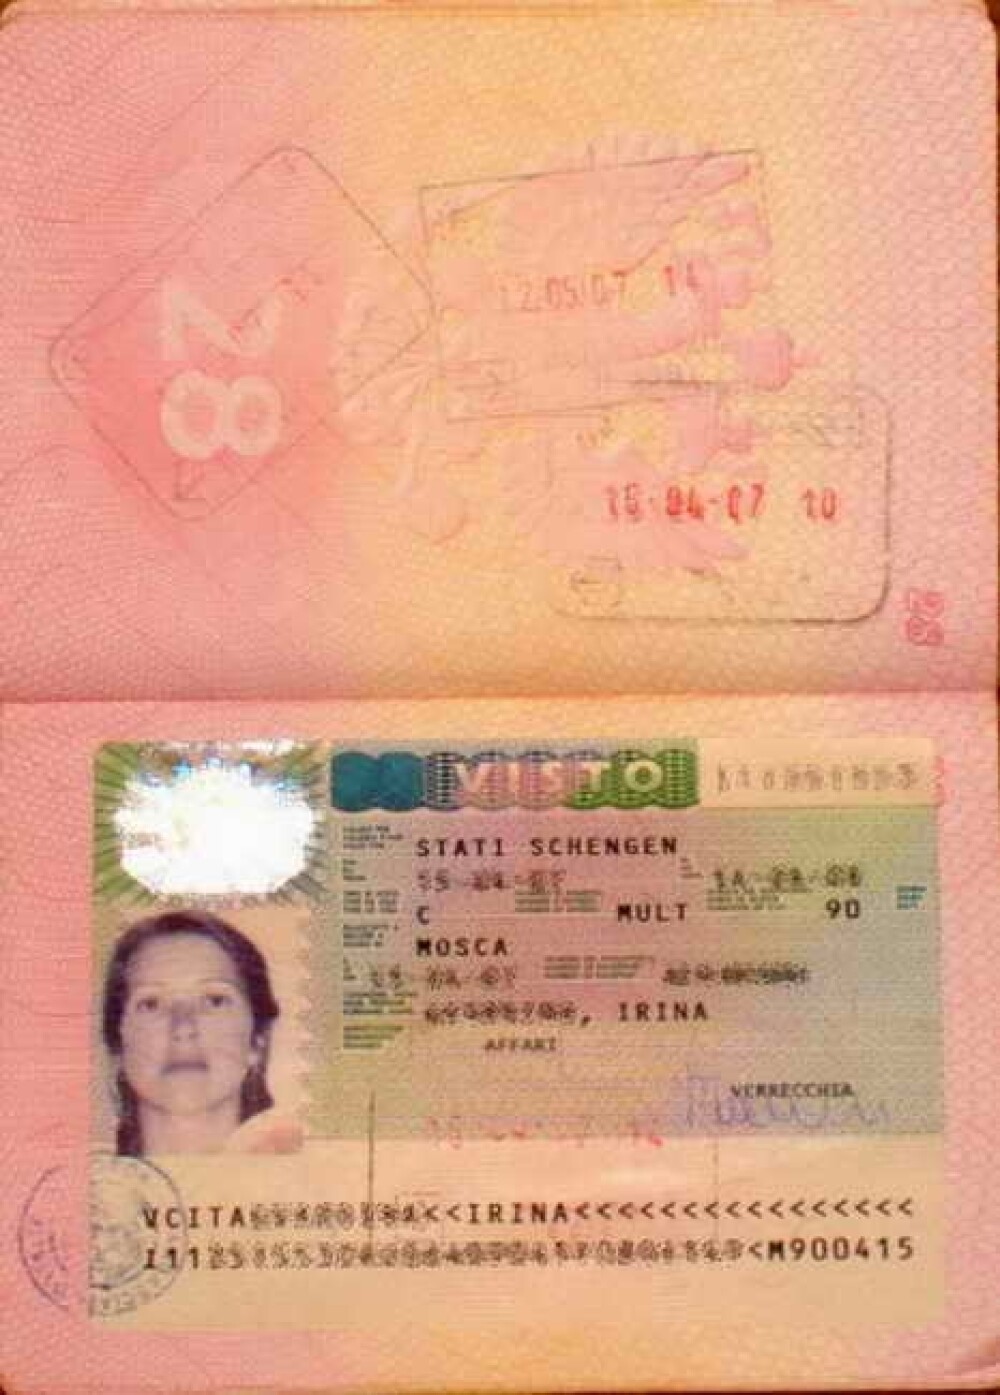 Imagini interzise minorilor. Secretul incredibil din spatele acestei imagini de pasaport. FOTO - Imaginea 2